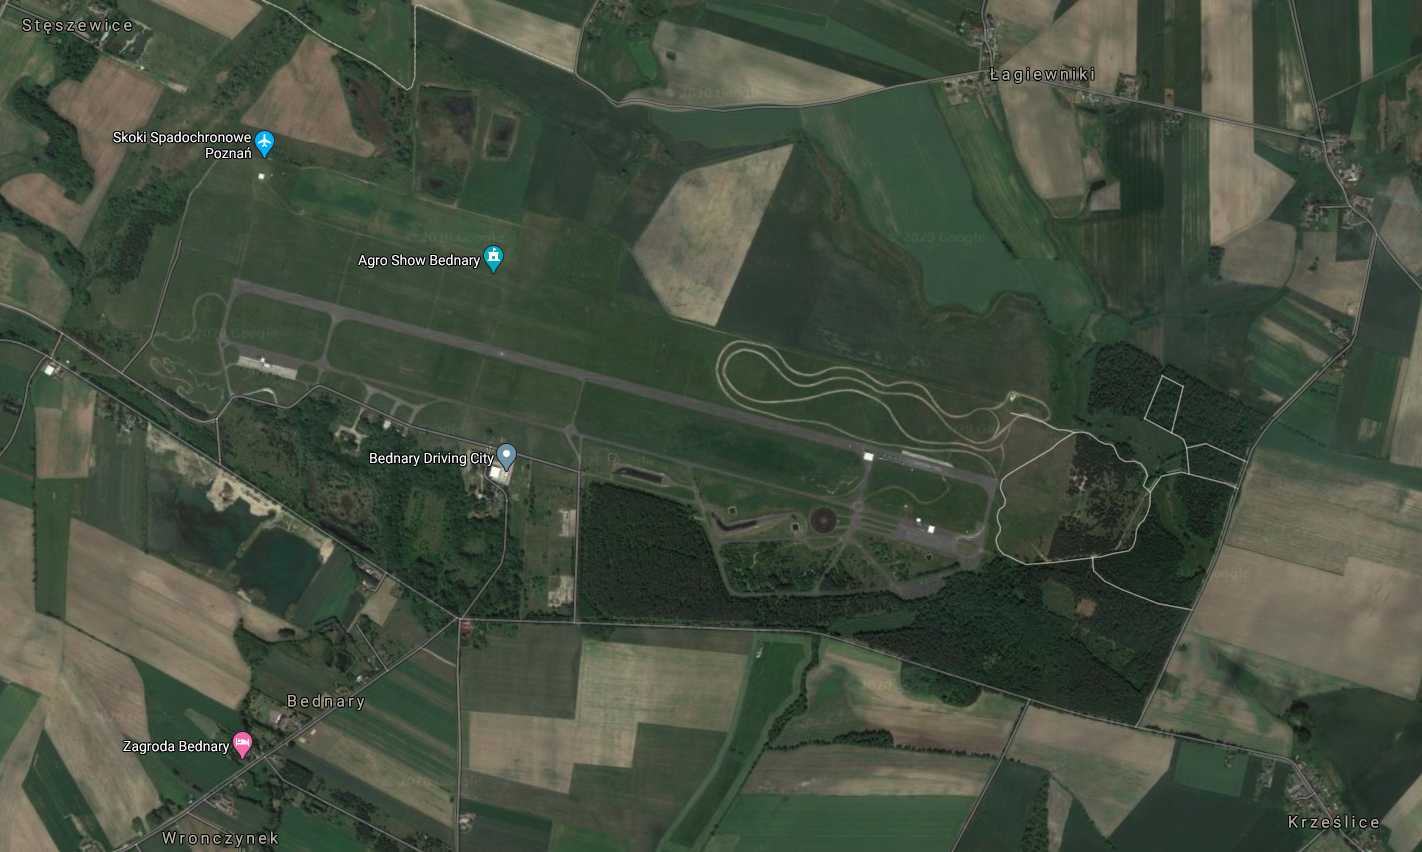 Lotnisko Bednary w widoku z satelity. 2018 rok. Zdjęcie LAC